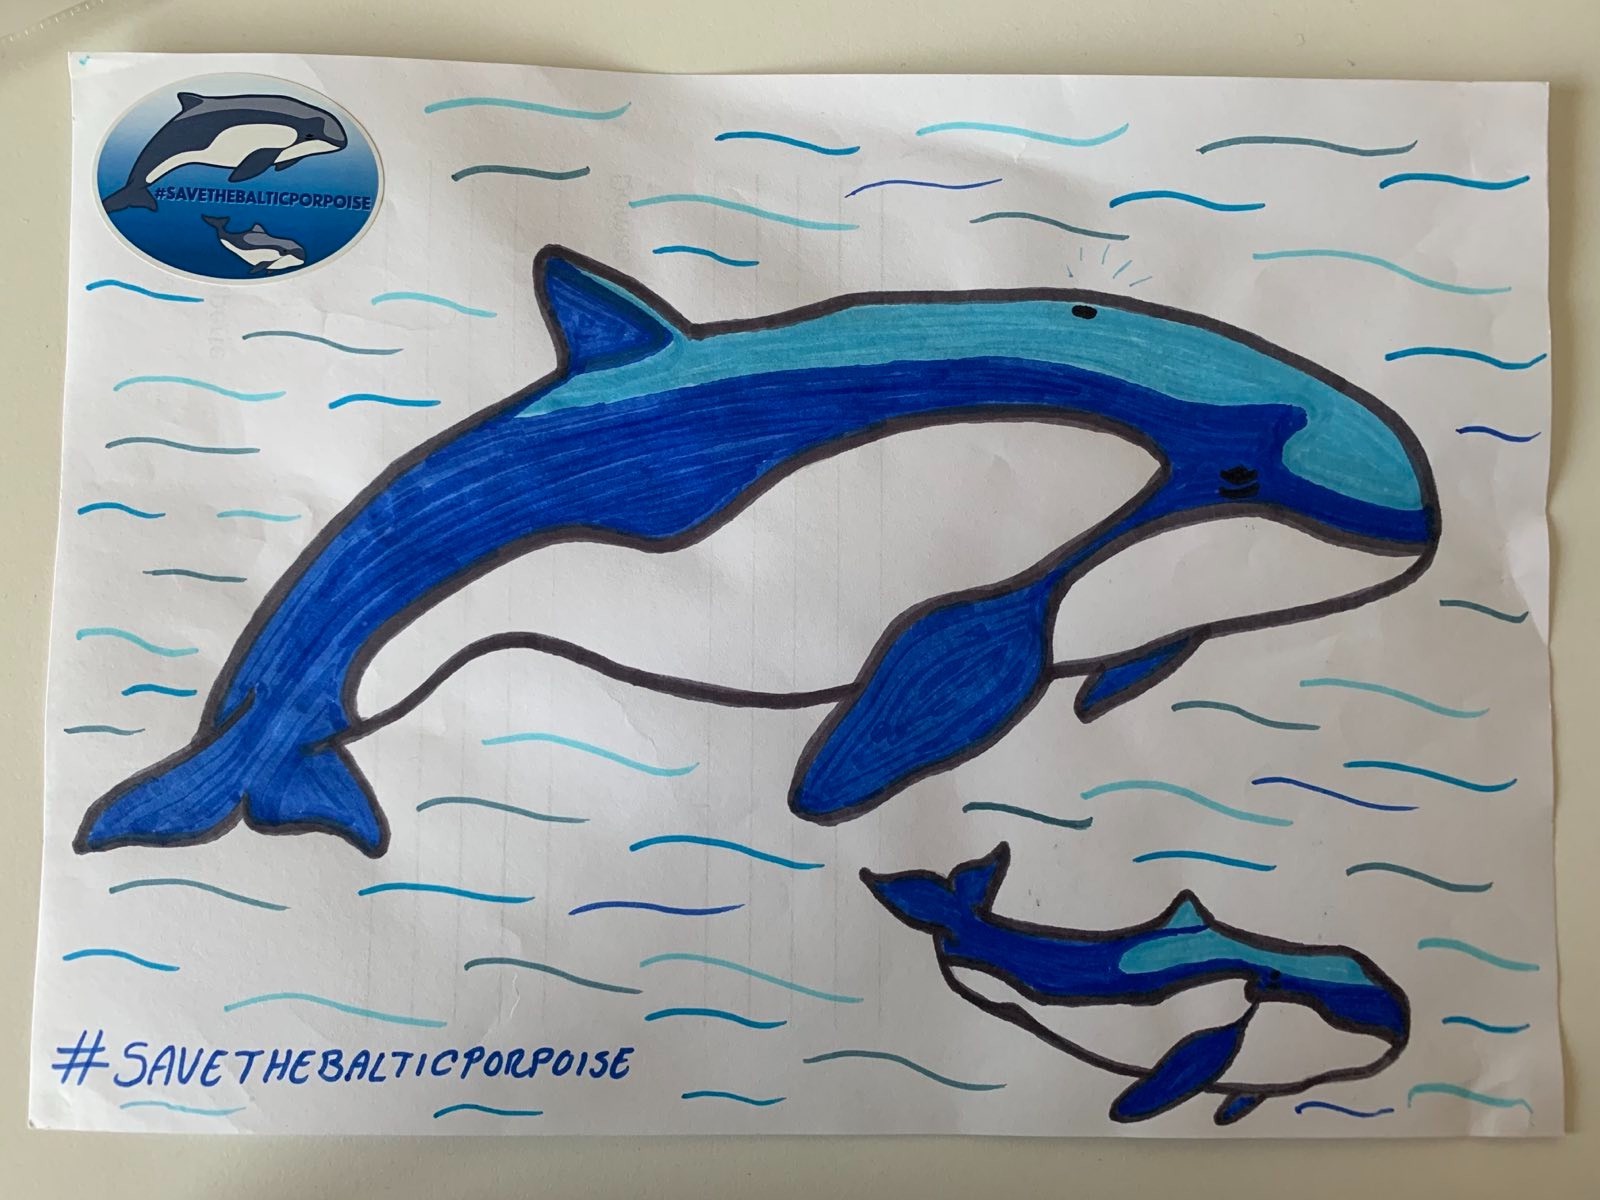 Zeichnung eines erwachsenen Schweinswals und eines Schweinswalbabys, mit dem Hashtag #SaveTheBalticPorpoise